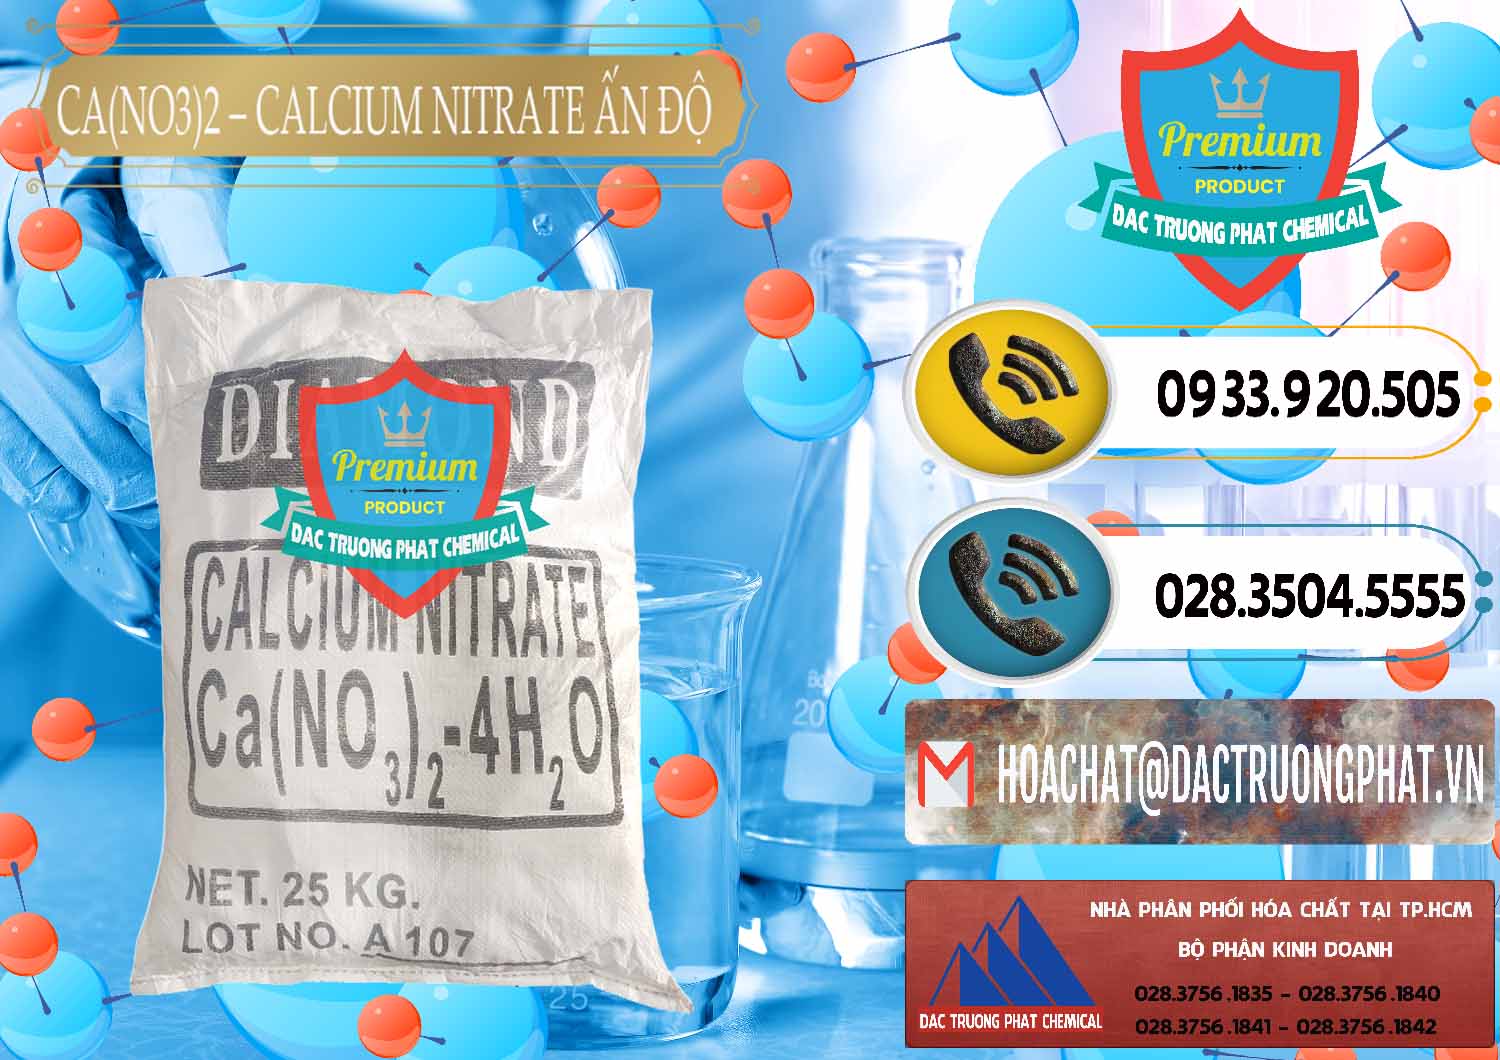 Cty phân phối - bán CA(NO3)2 – Calcium Nitrate Ấn Độ India - 0038 - Công ty phân phối - cung cấp hóa chất tại TP.HCM - hoachatdetnhuom.vn